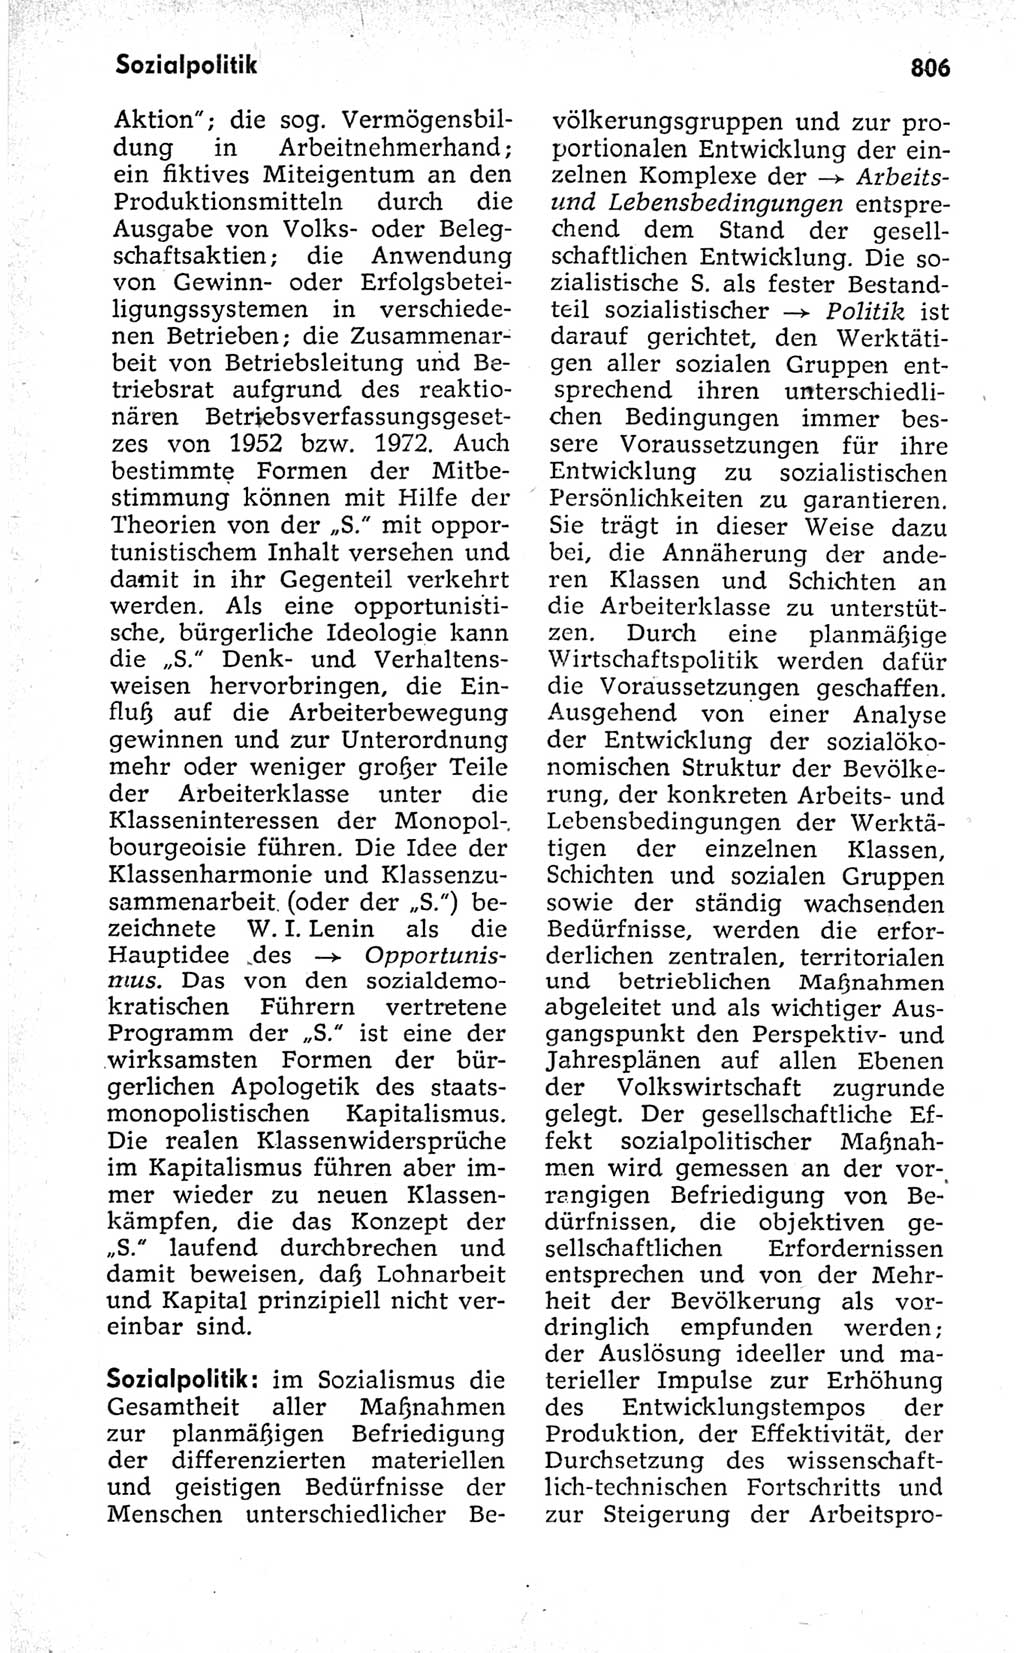 Kleines politisches Wörterbuch [Deutsche Demokratische Republik (DDR)] 1973, Seite 806 (Kl. pol. Wb. DDR 1973, S. 806)